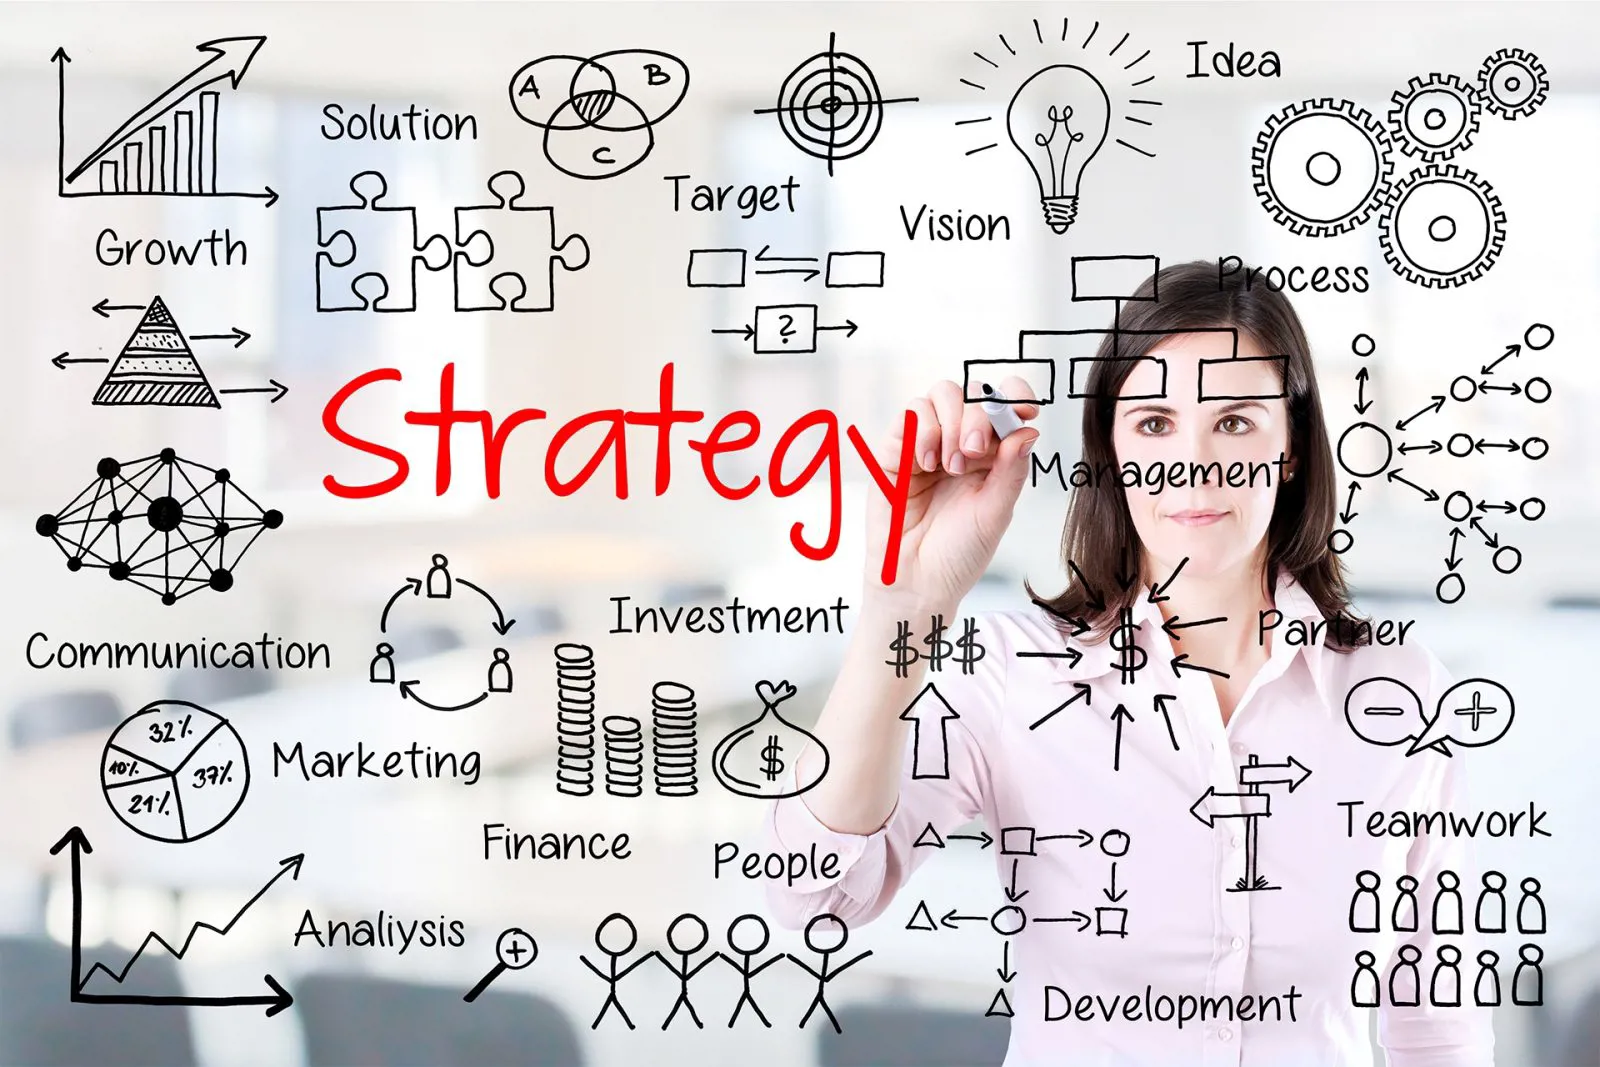 مدیریت استراتژیک در یک سازمان چیست و چه مزایایی دارد؟